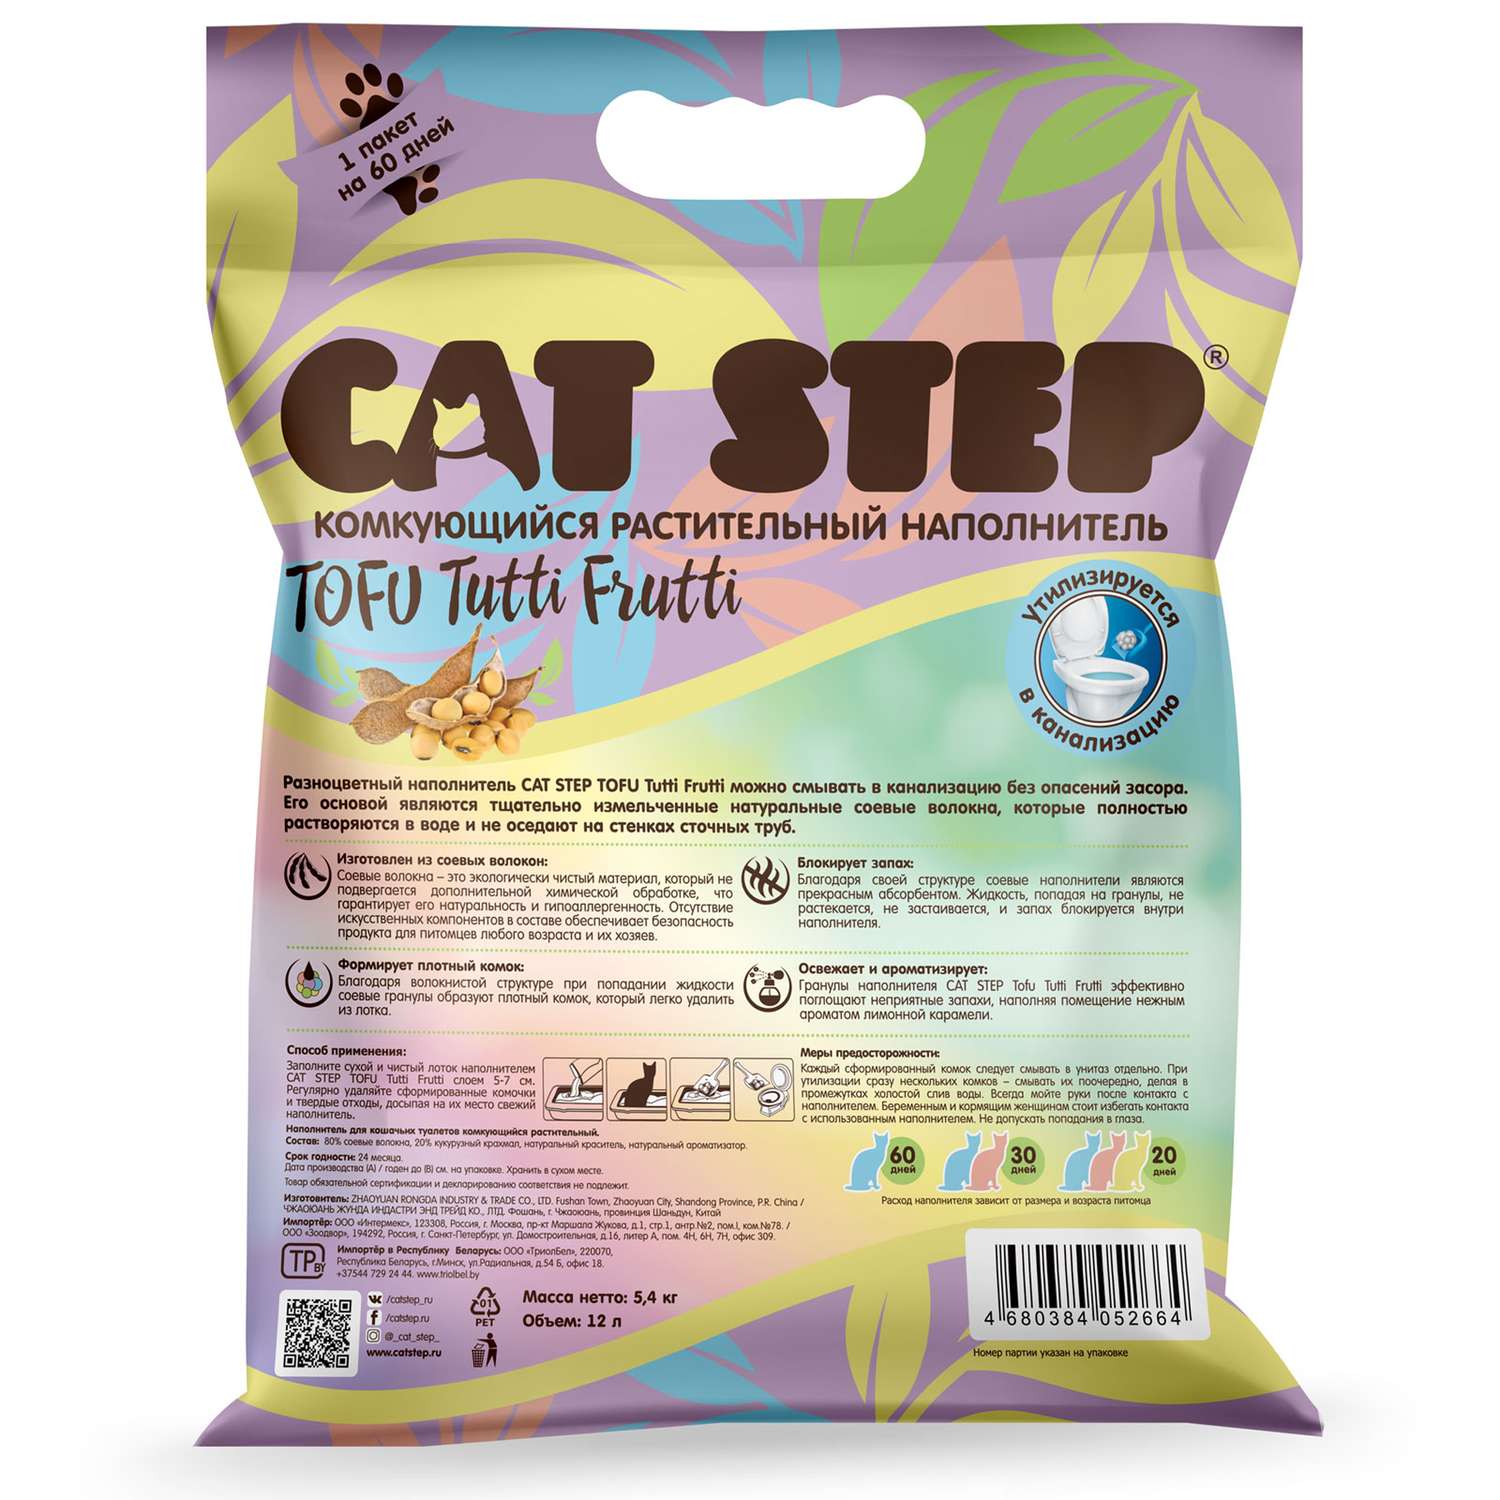 Наполнитель для кошек Cat Step Tofu Tutti Frutti комкующийся растительный 12л - фото 2